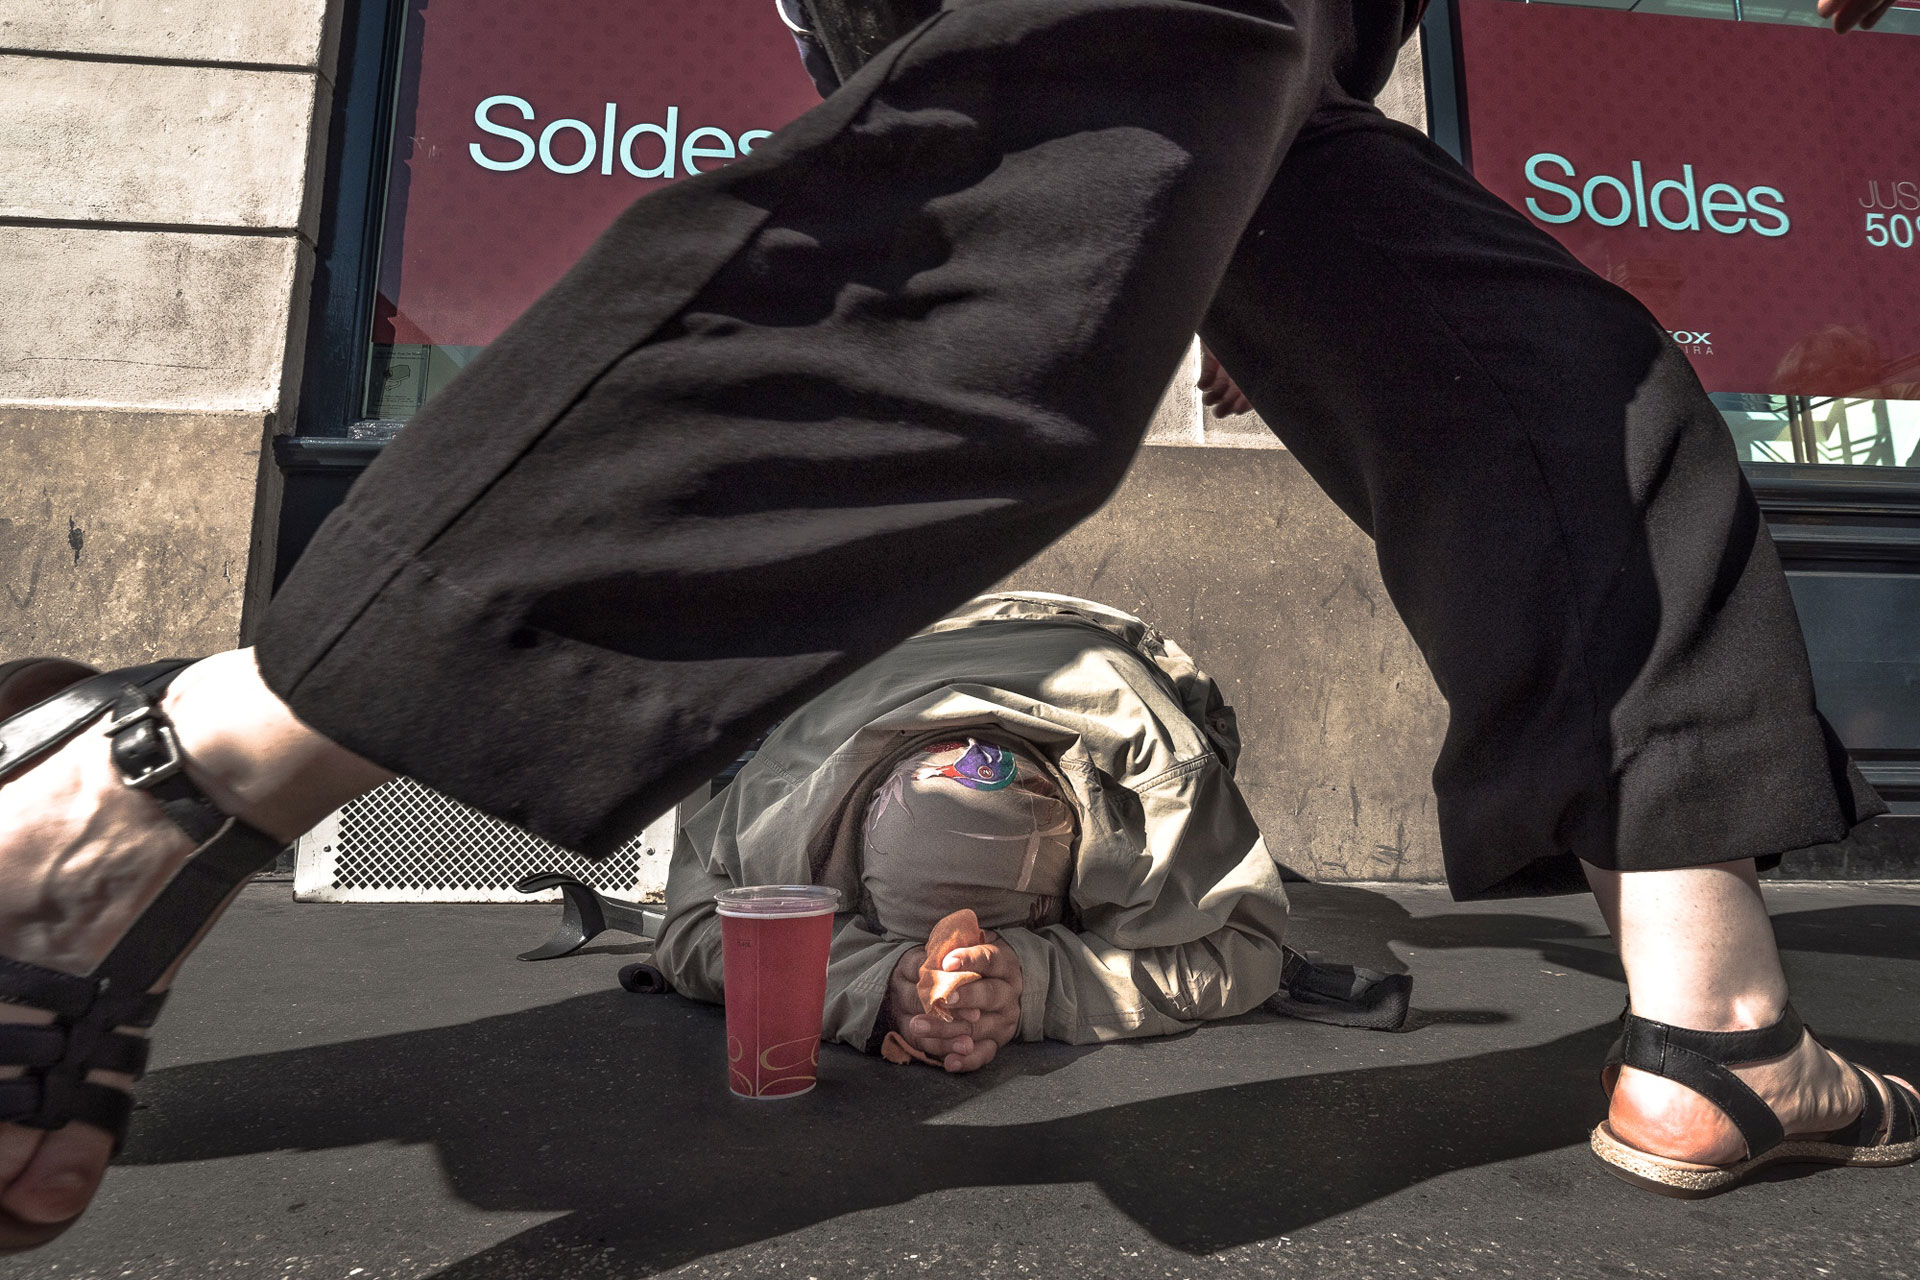 Beggar Framed Between Legs (From Paris Series)